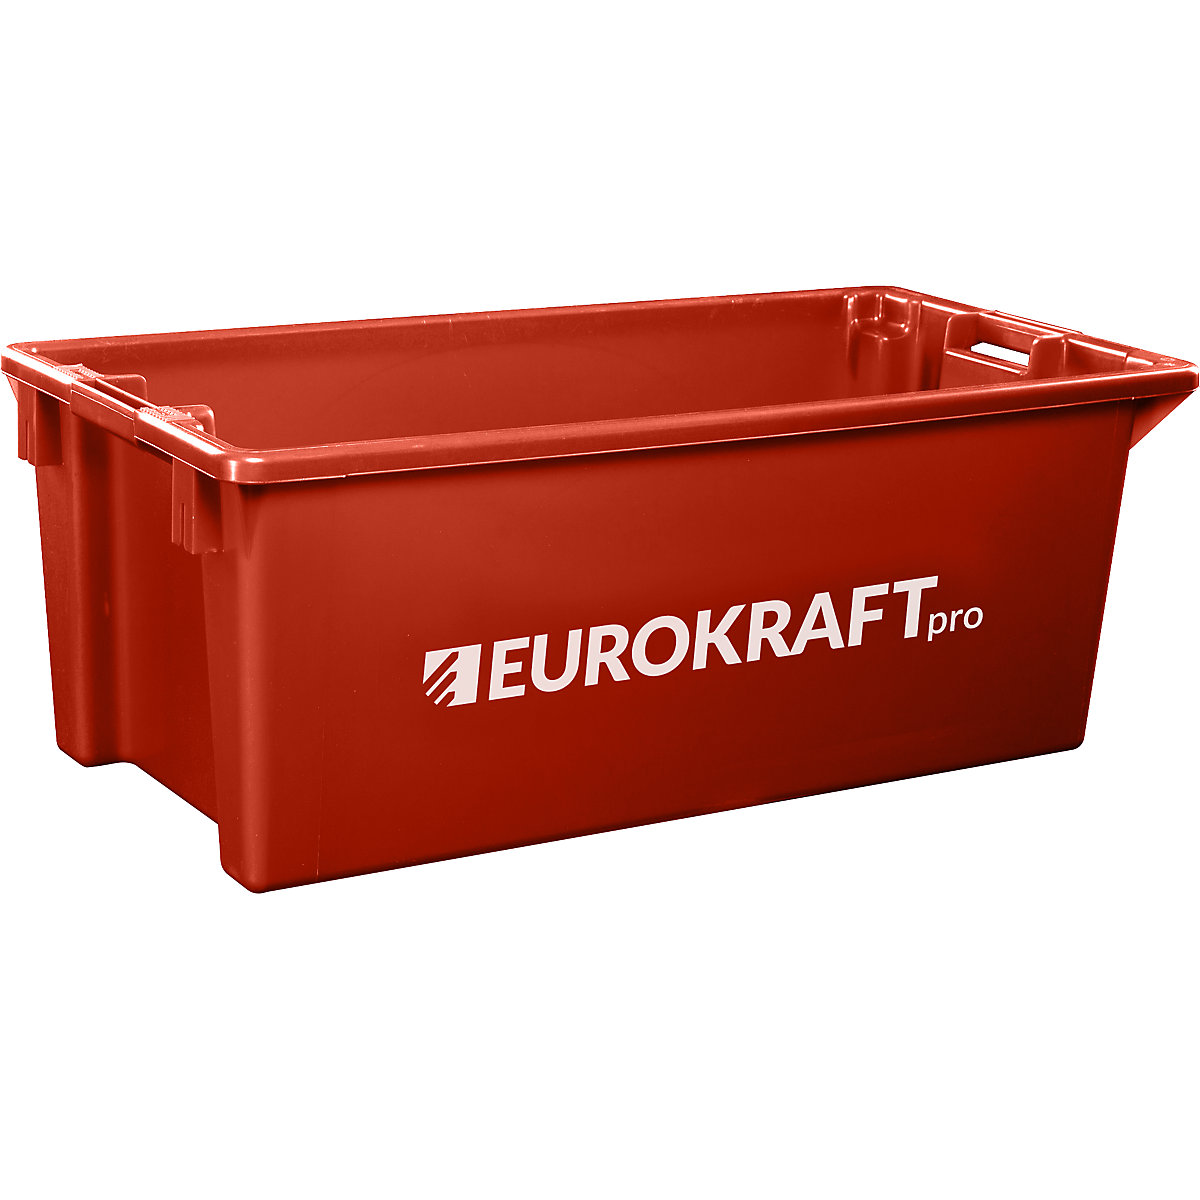 Cutie de depozitare din polipropilenă, adecvată pentru alimente – eurokraft pro